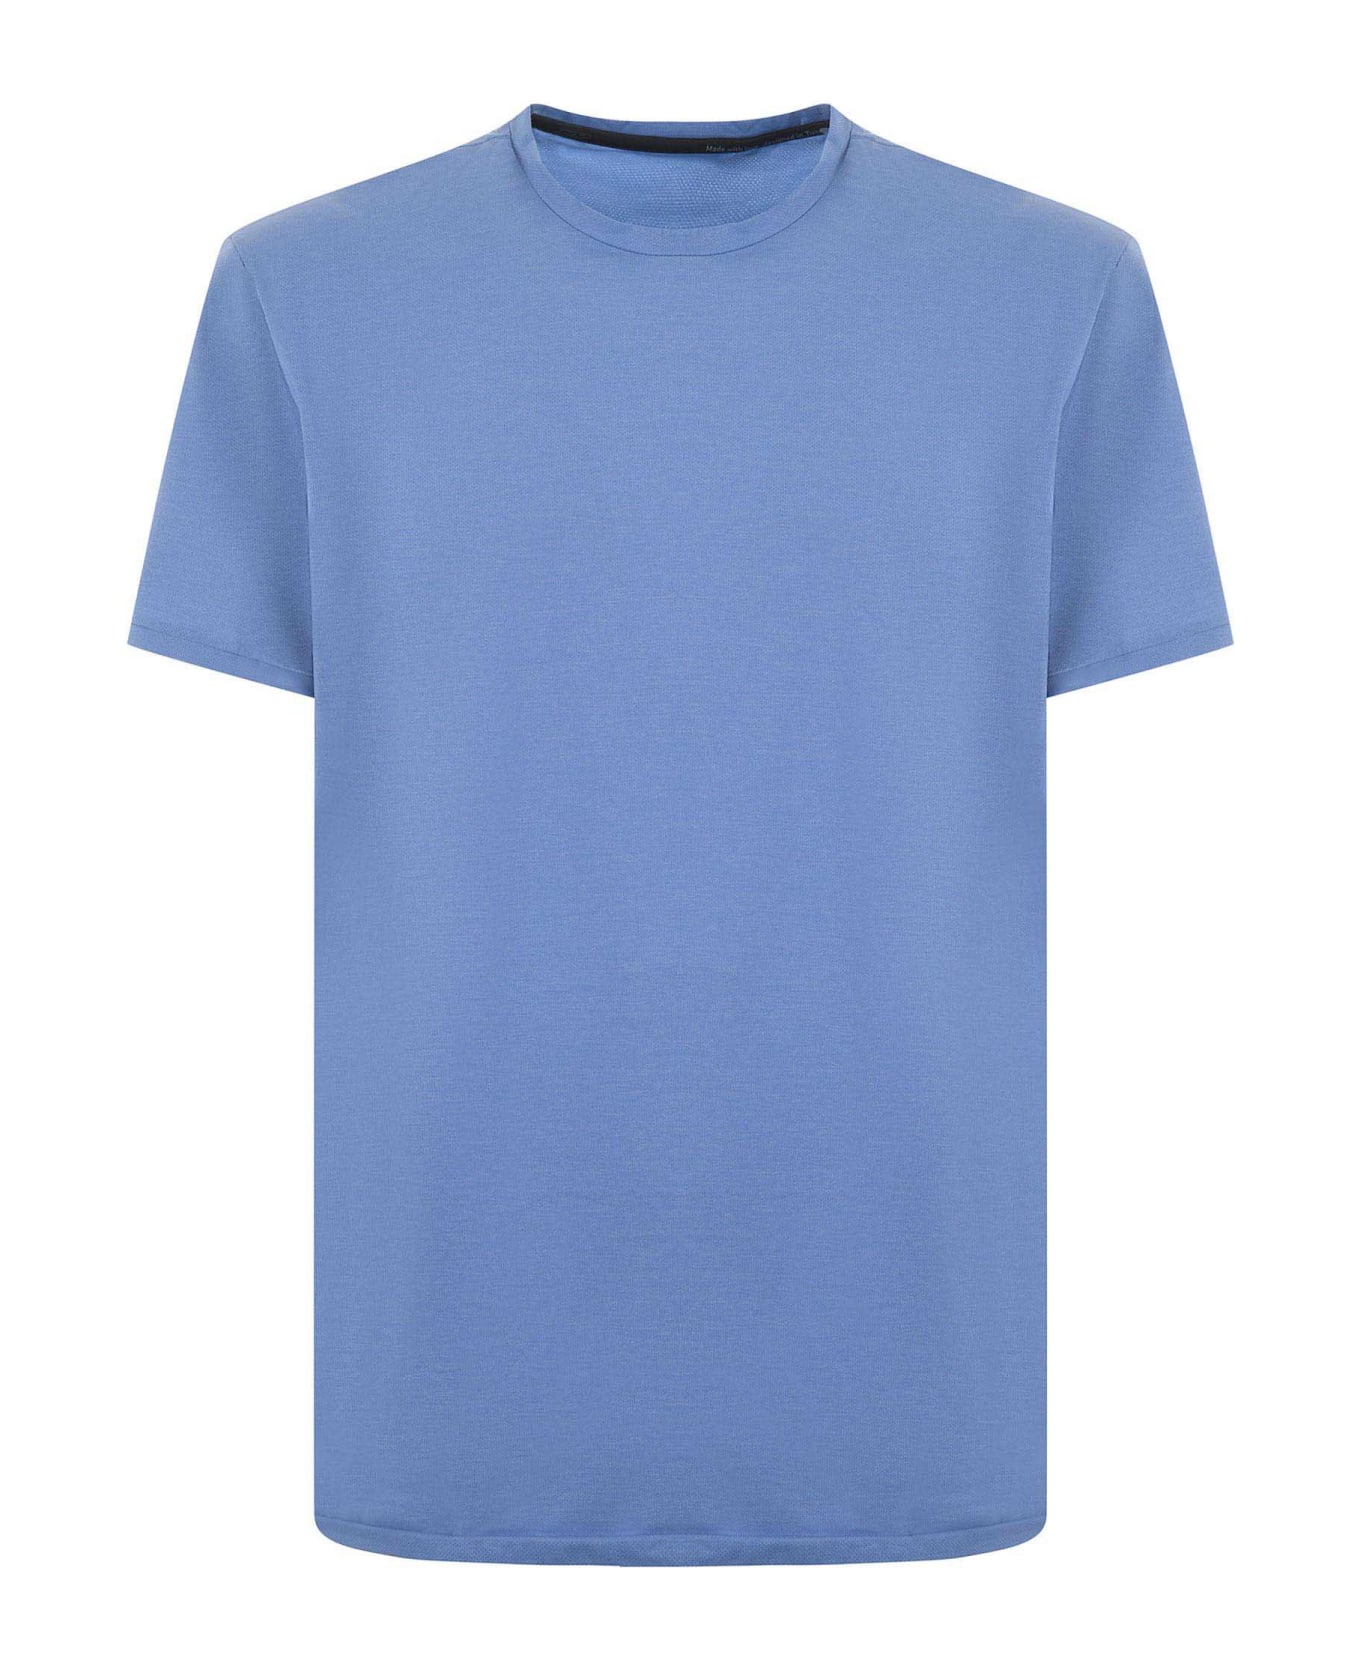 RRD - Roberto Ricci Design 'summer Smart' T-shirt - LIGHT BLUE